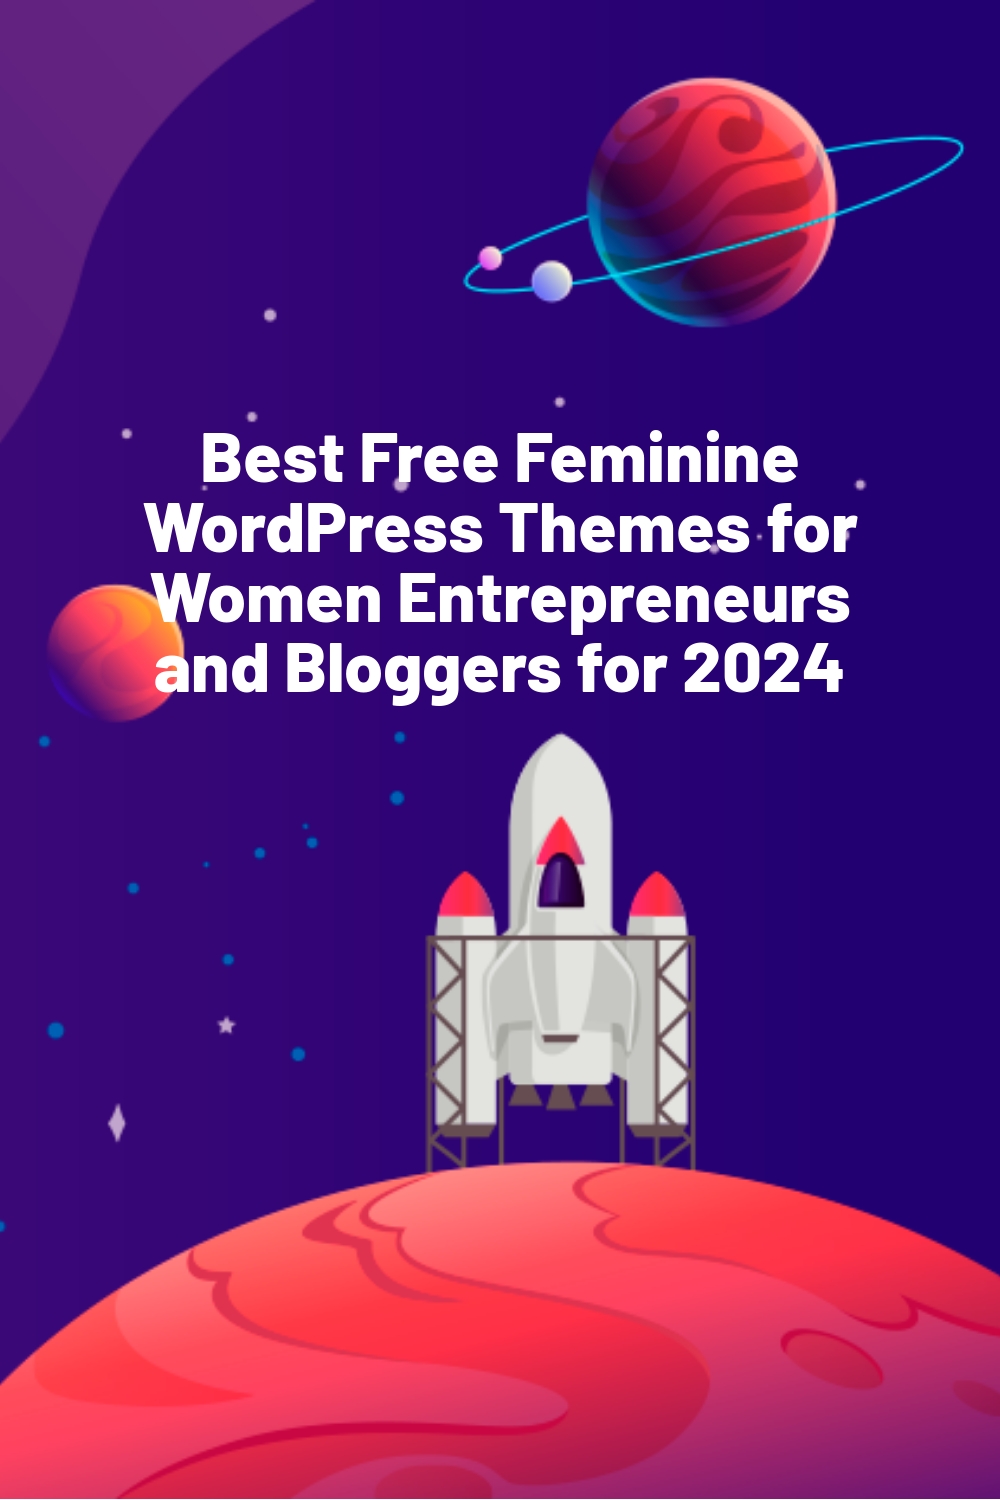 Best Free Feminine WordPress Themes for Women Entrepreneurs and Bloggers for 2024